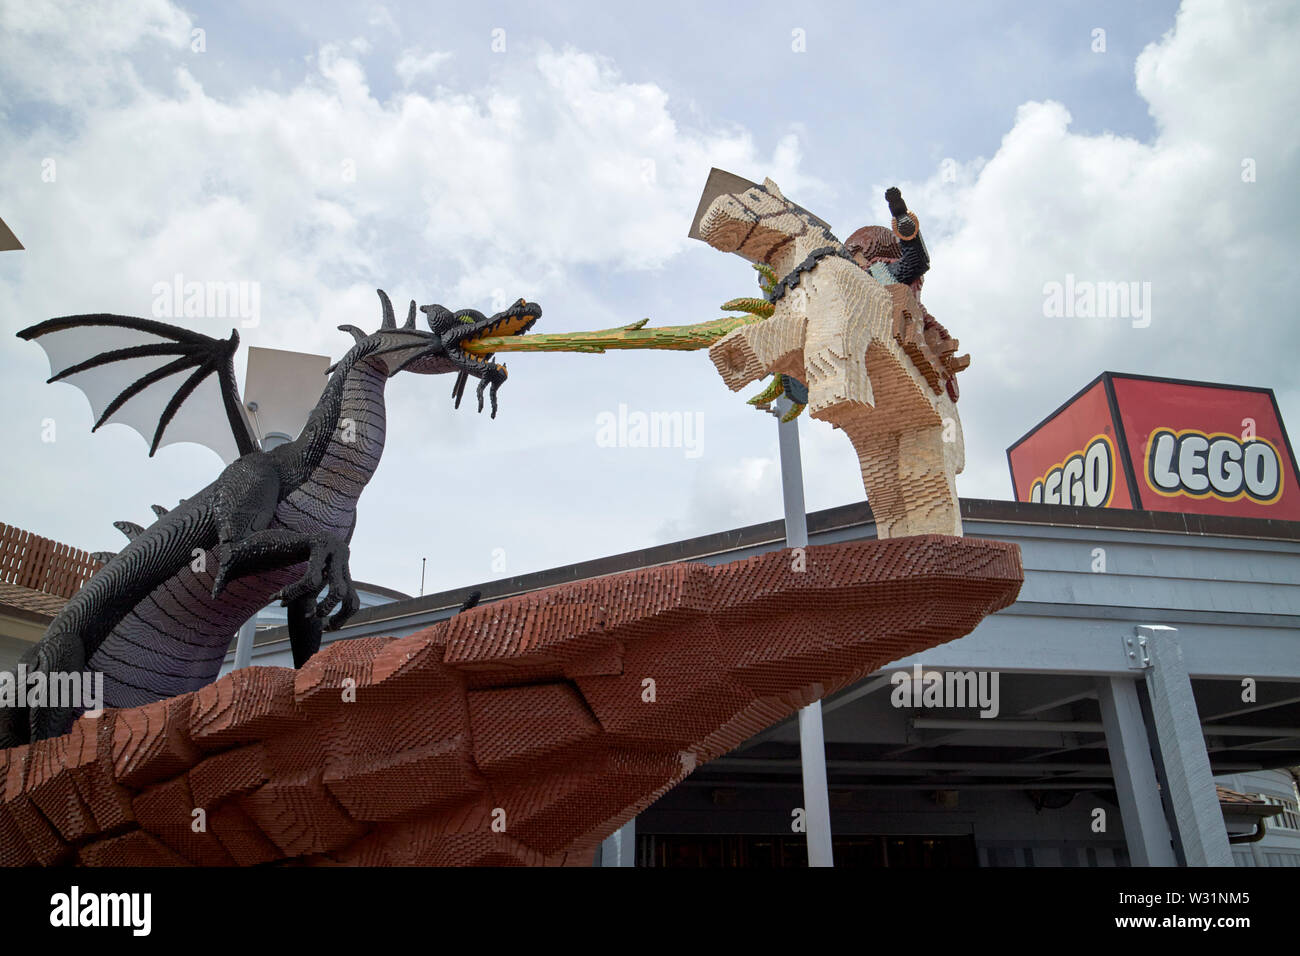 George et le dragon lego à l'extérieur de la boutique lego à disney springs Orlando la Floride Etats-Unis United States of America Banque D'Images